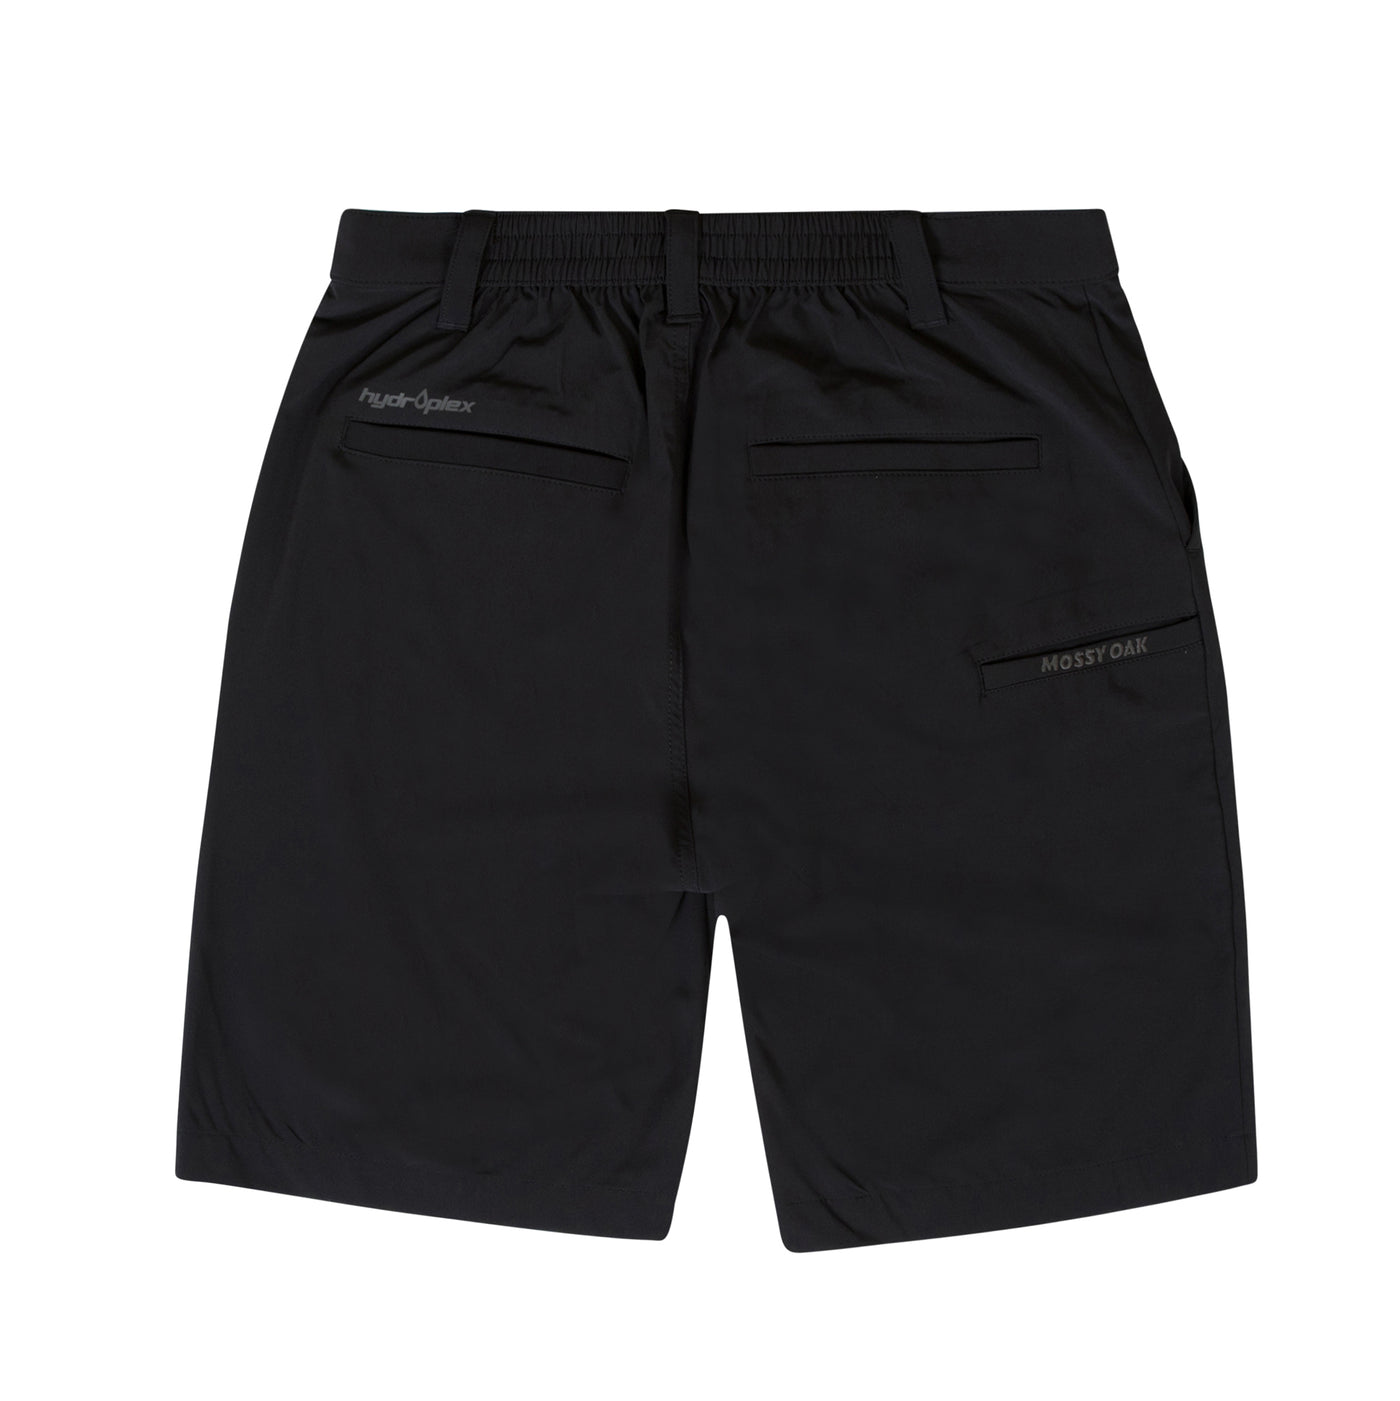 Mossy Oak Black Active Shorts for Men